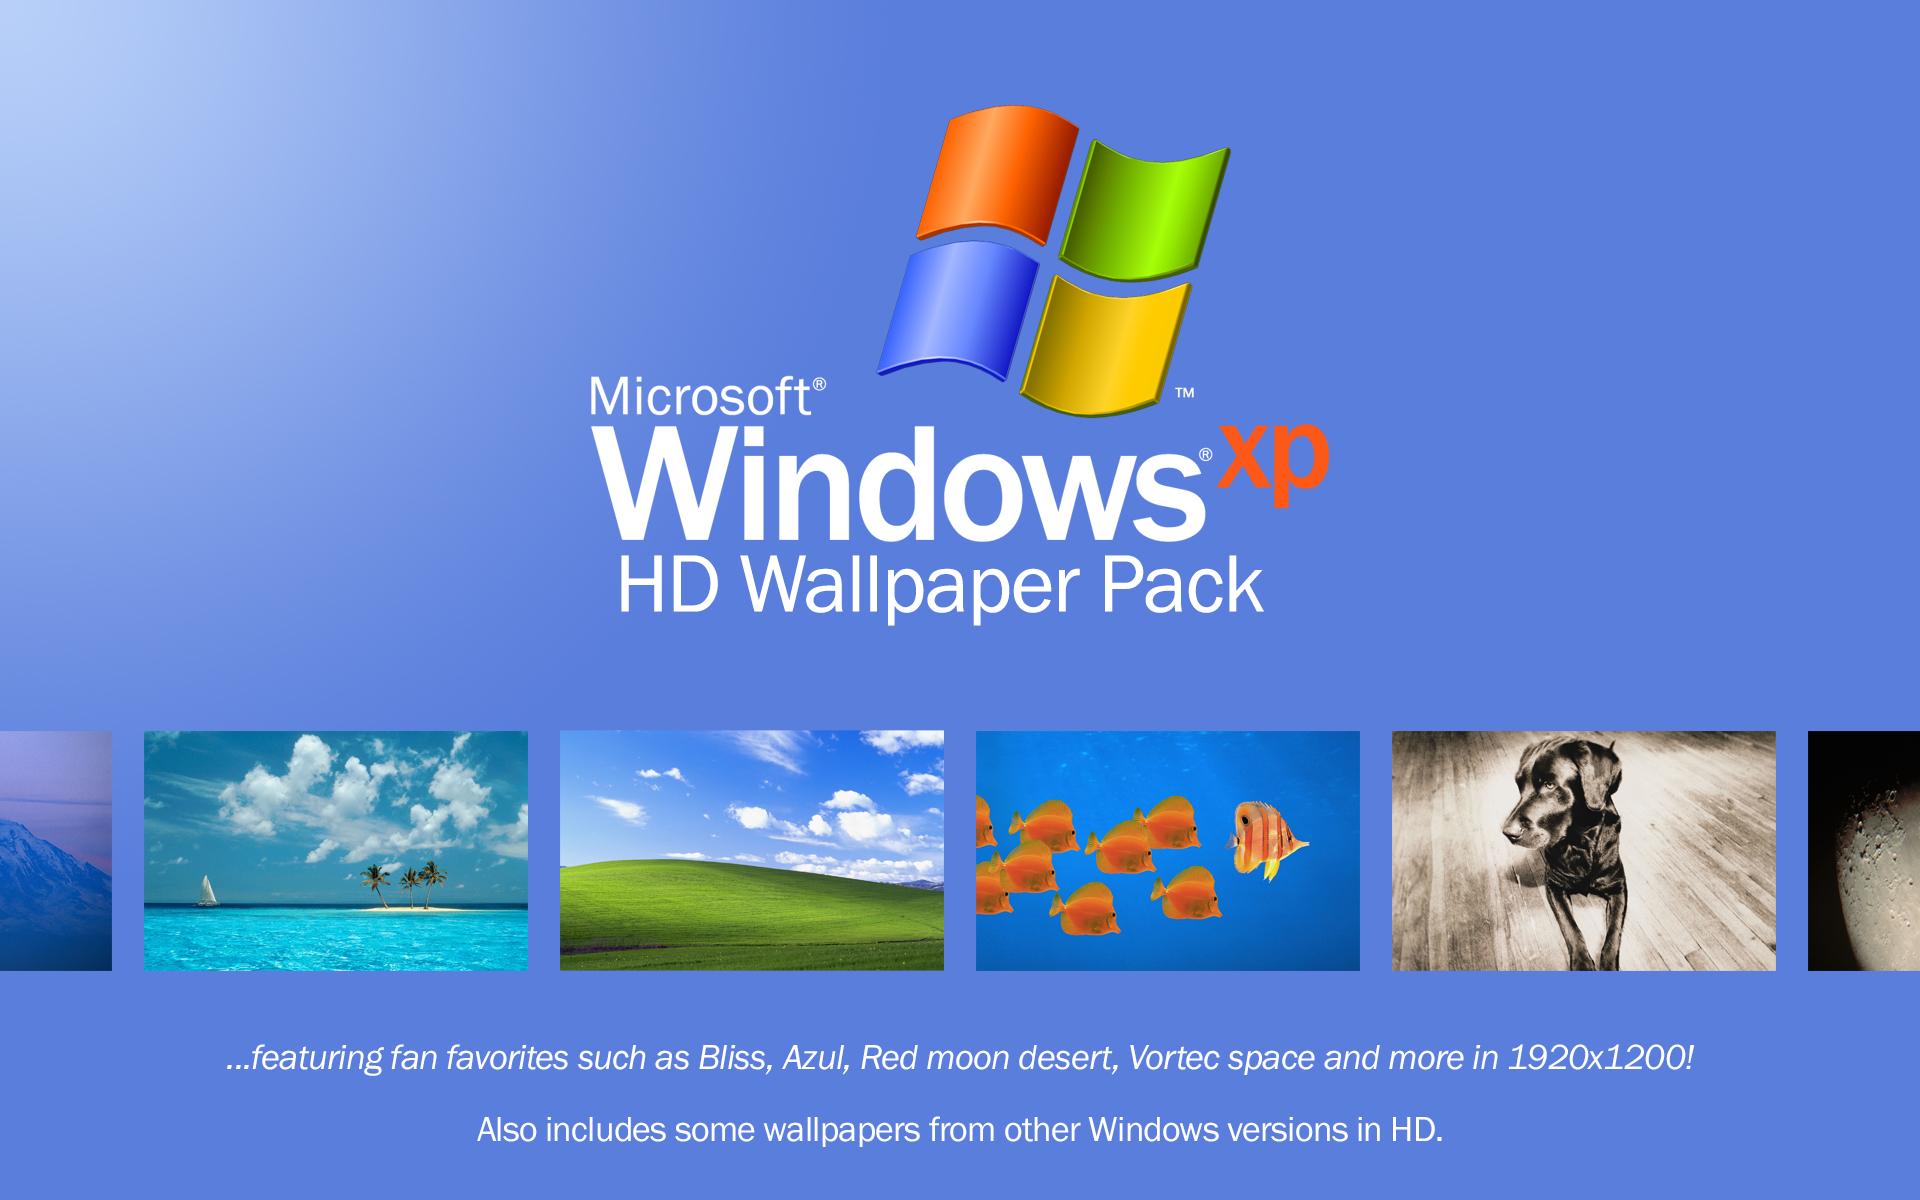 Bạn muốn thay đổi không gian làm việc trên máy tính của mình? Với bộ sưu tập hình nền Windows XP của WindowsAesthetics trên DeviantArt, bạn có thể lựa chọn từ nhiều bức tranh nghệ thuật với chất lượng HD. Hãy cập nhật ngay để tận hưởng không gian tuyệt đẹp cho máy tính của mình.